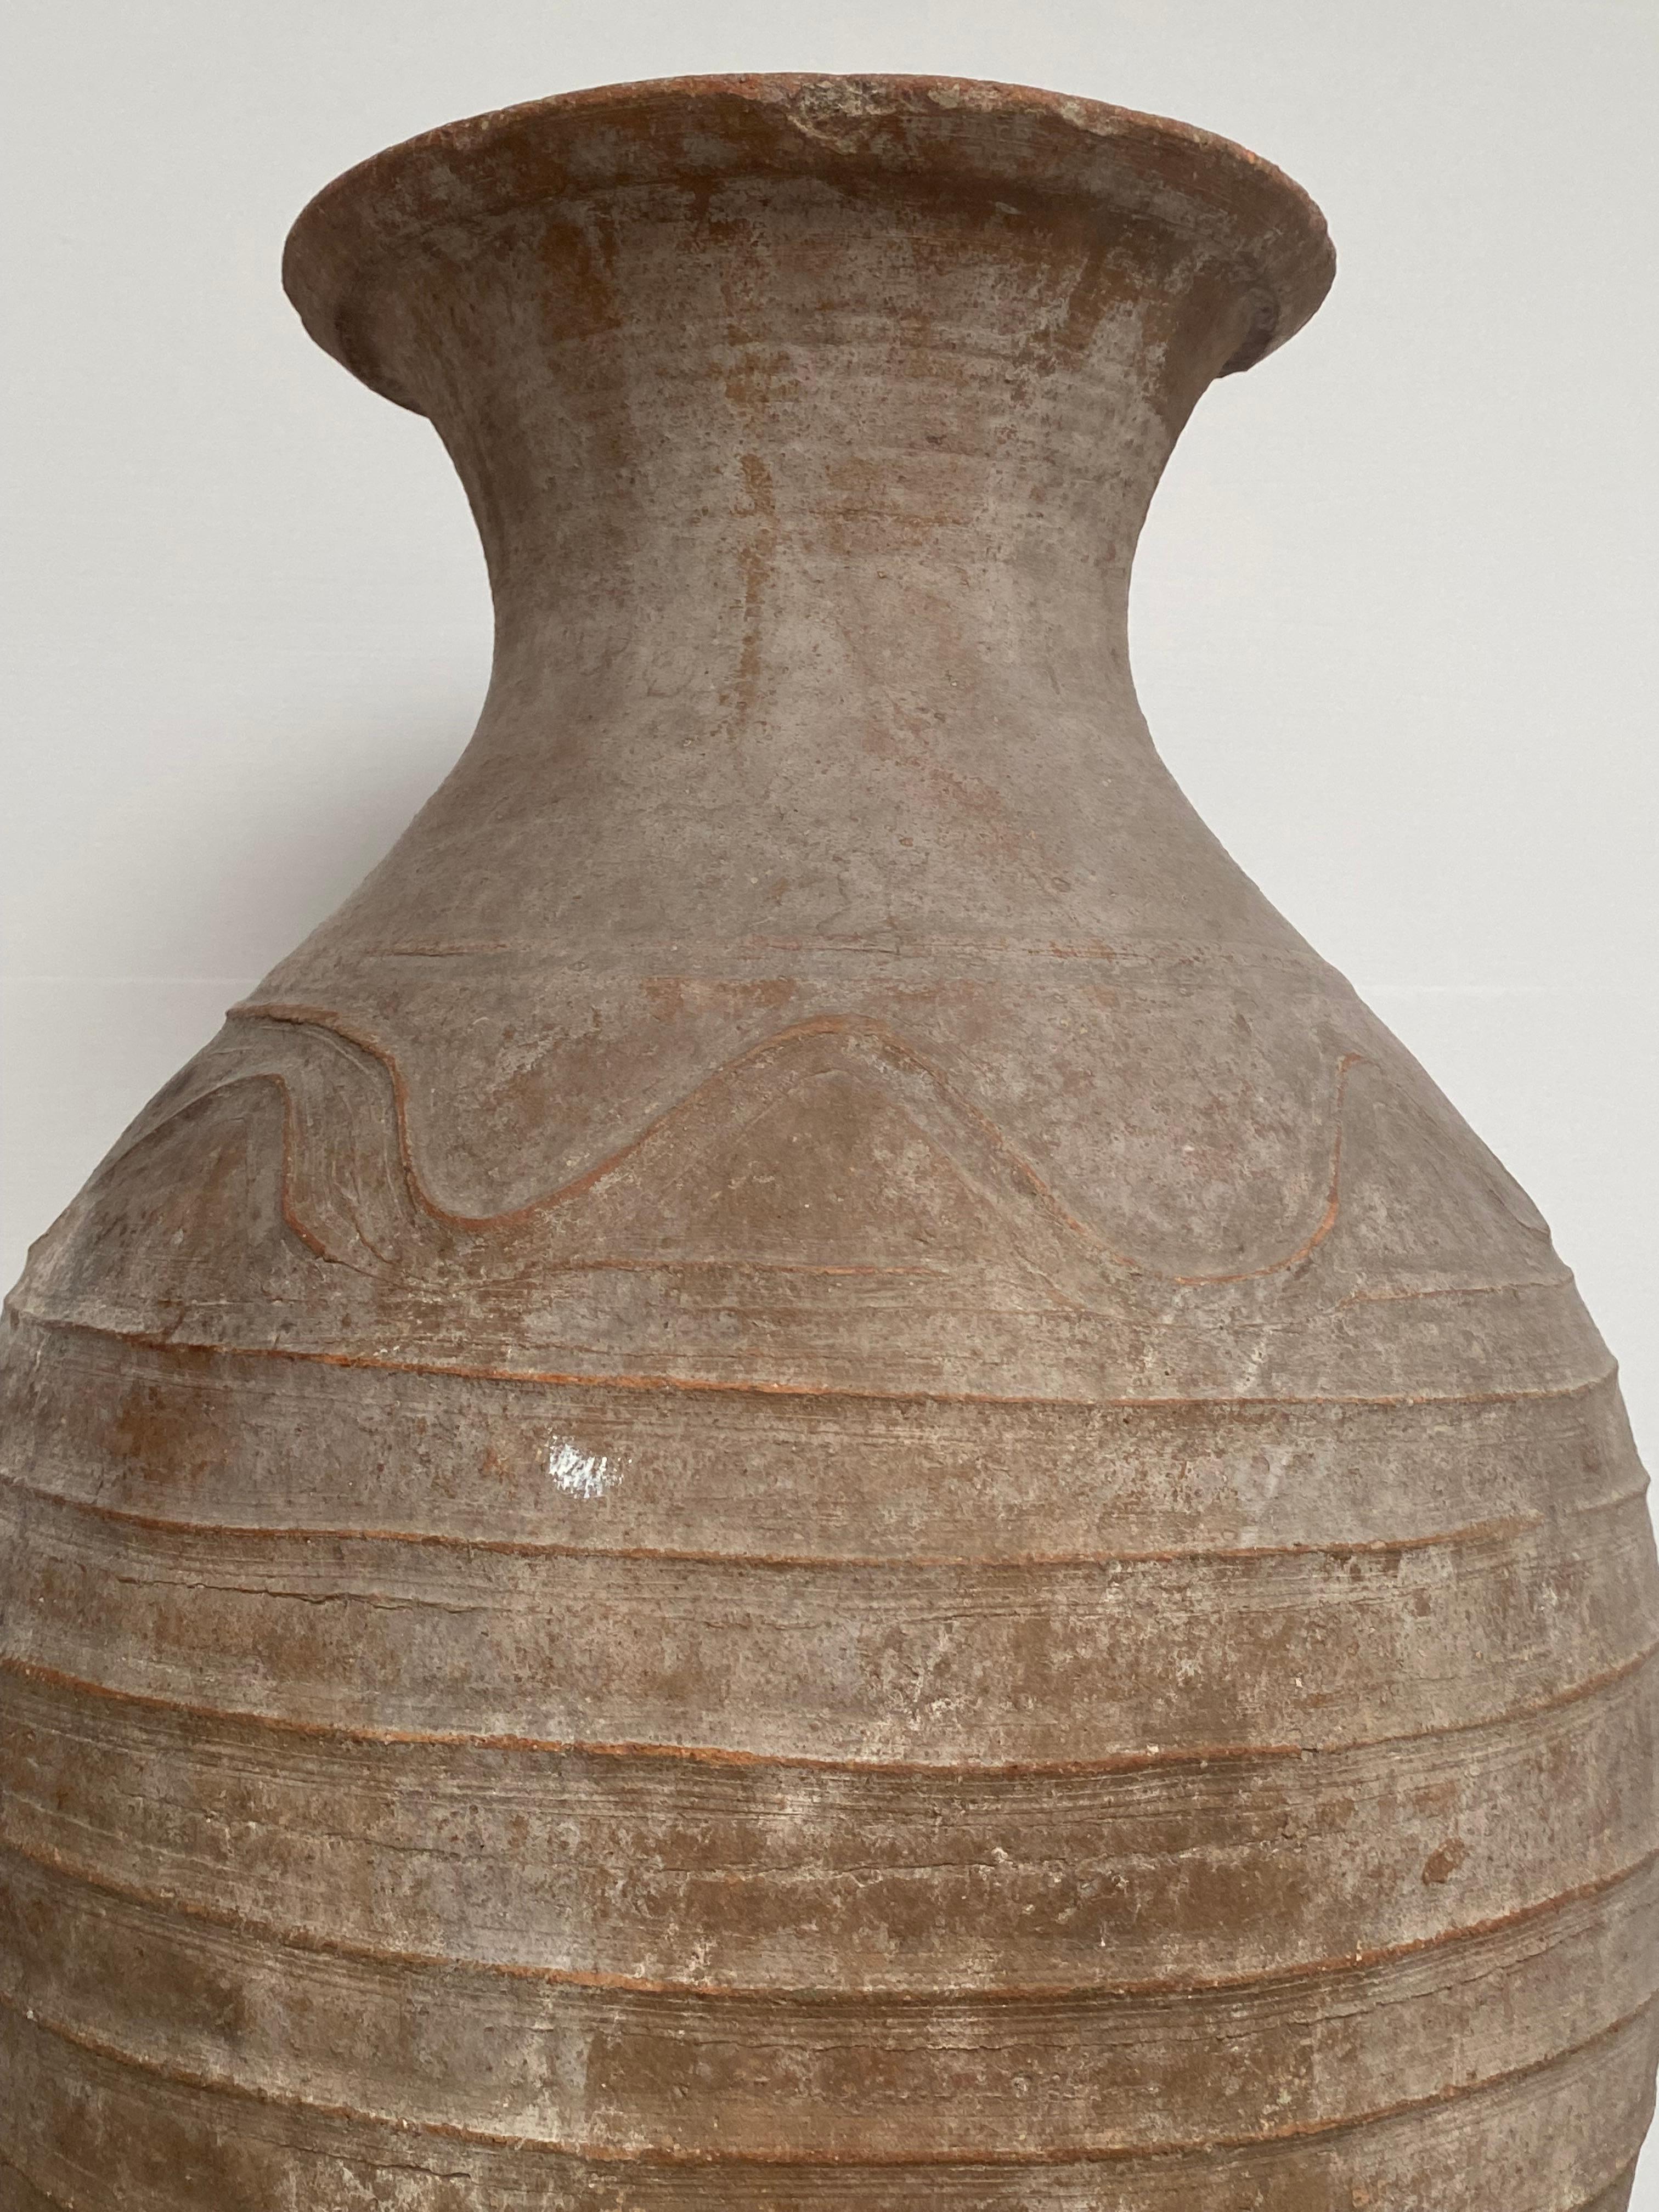 Große, antike und sehr elegante Terrakotta-Vase aus dem Iran, 1920
Gut, große antike Patina der Terrakotta,
Dekoriert mit einfachen Linien und Motiven,
Großer Glanz der unterschiedlichen Vielfalt der braunen Farben,
Eine antike Urne voller